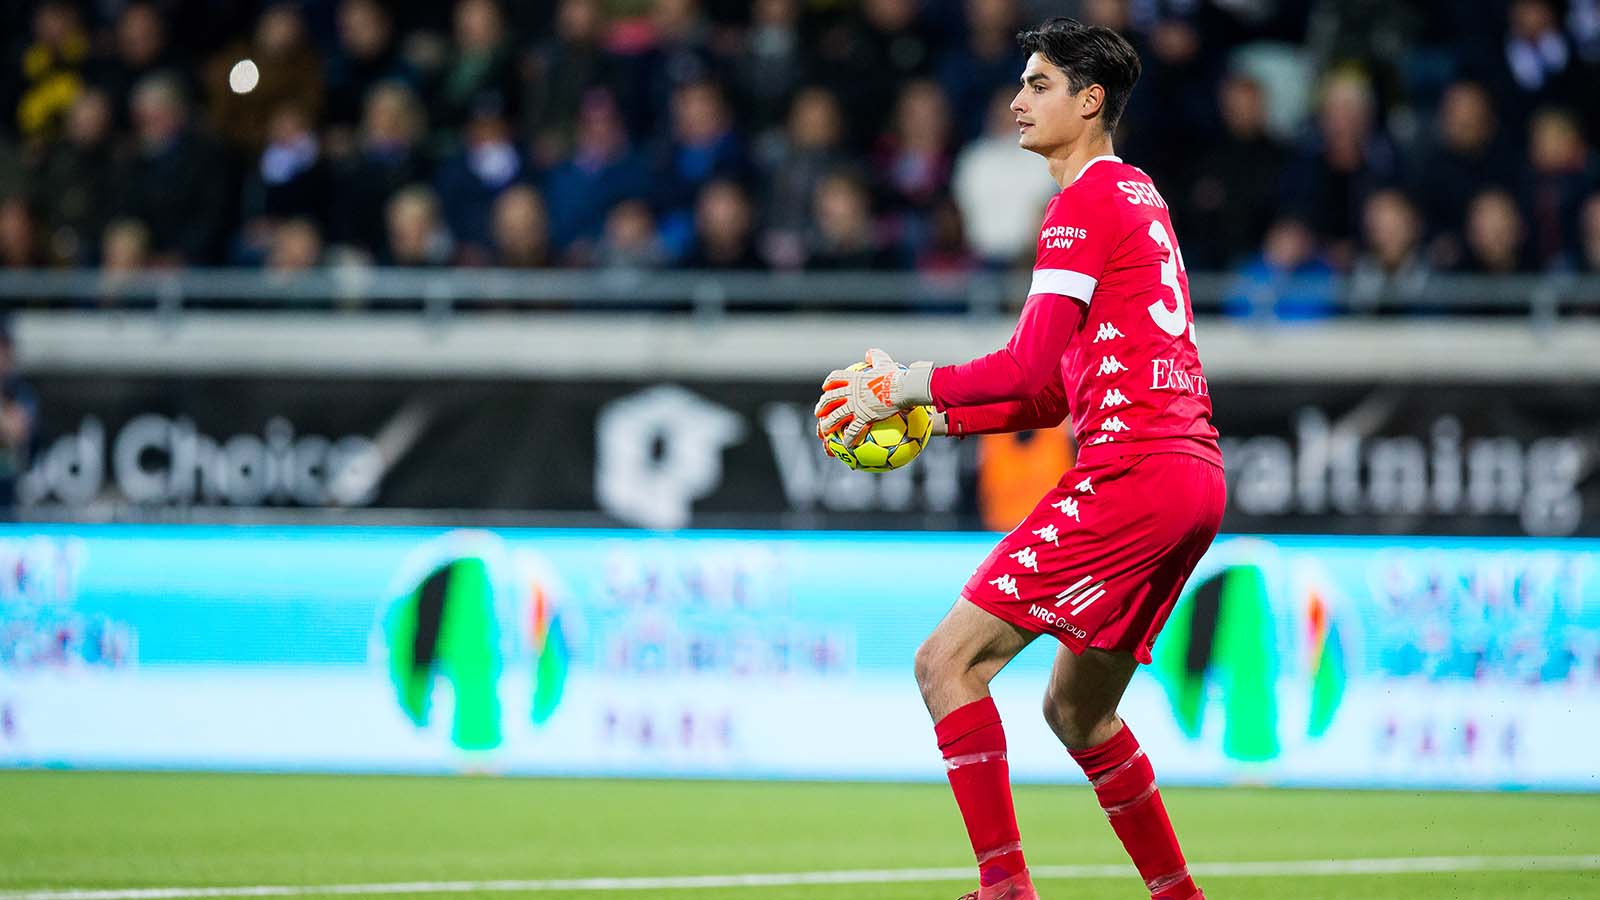 IFK Göteborg: Tom värd en bättre debut